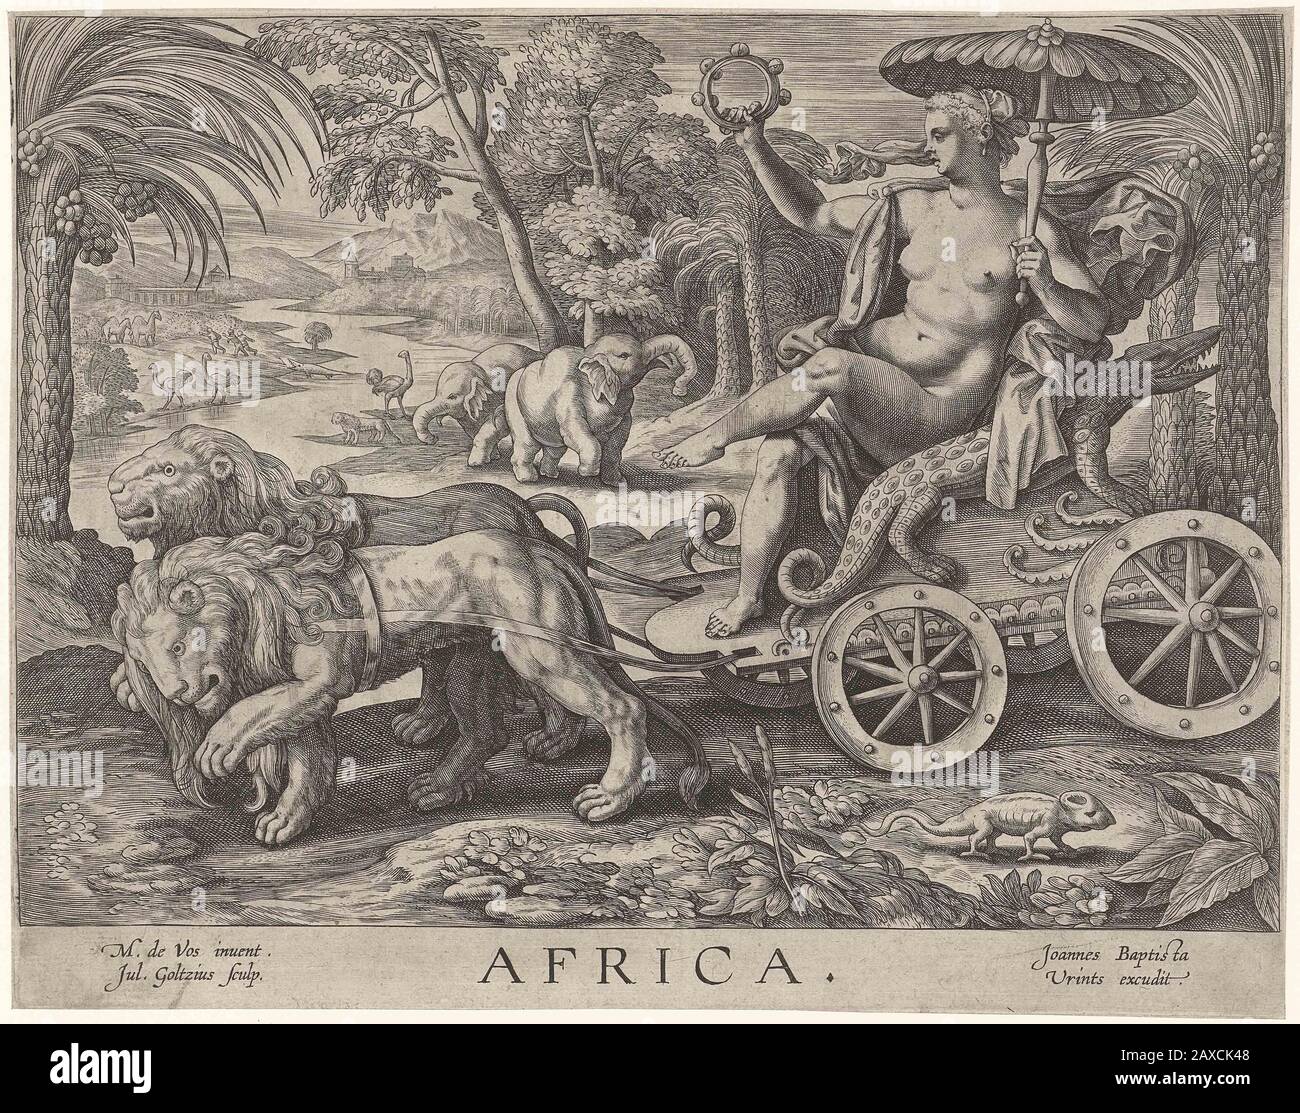 Afrika; De vrouwelijke personificatie van het continent Afrika zit op kar  getrokken door twee leeuwen. Naast haar een krokodil. Ze heeft een  tambourijn in de rechterhand en een parasol in de linker.